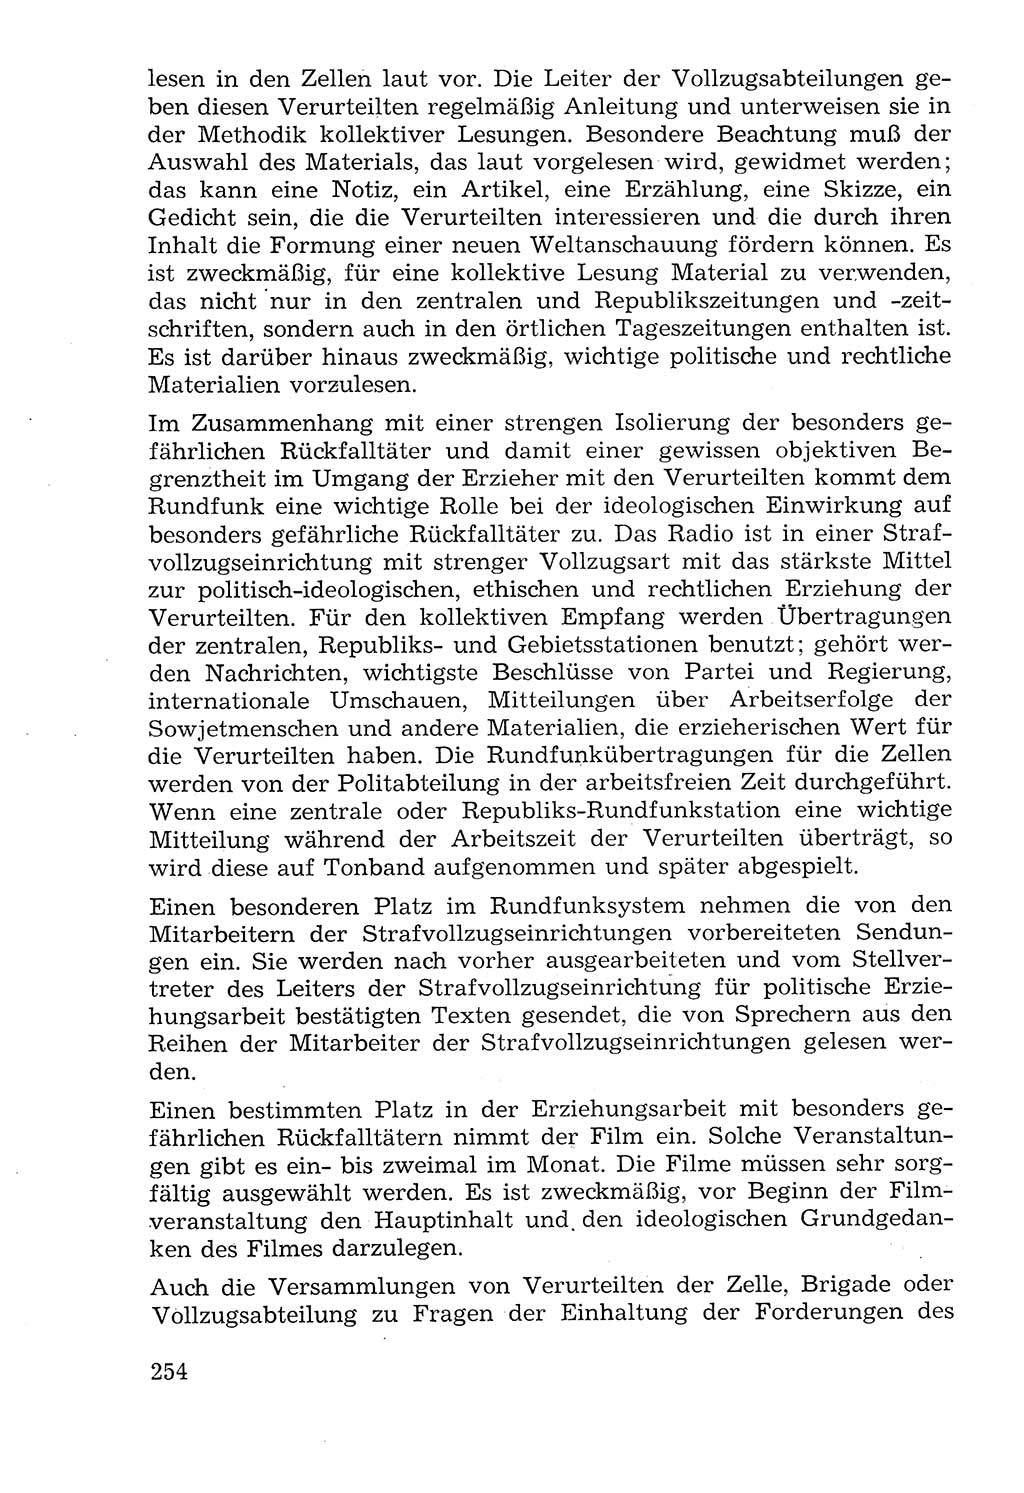 Lehrbuch der Strafvollzugspädagogik [Deutsche Demokratische Republik (DDR)] 1969, Seite 254 (Lb. SV-Pd. DDR 1969, S. 254)